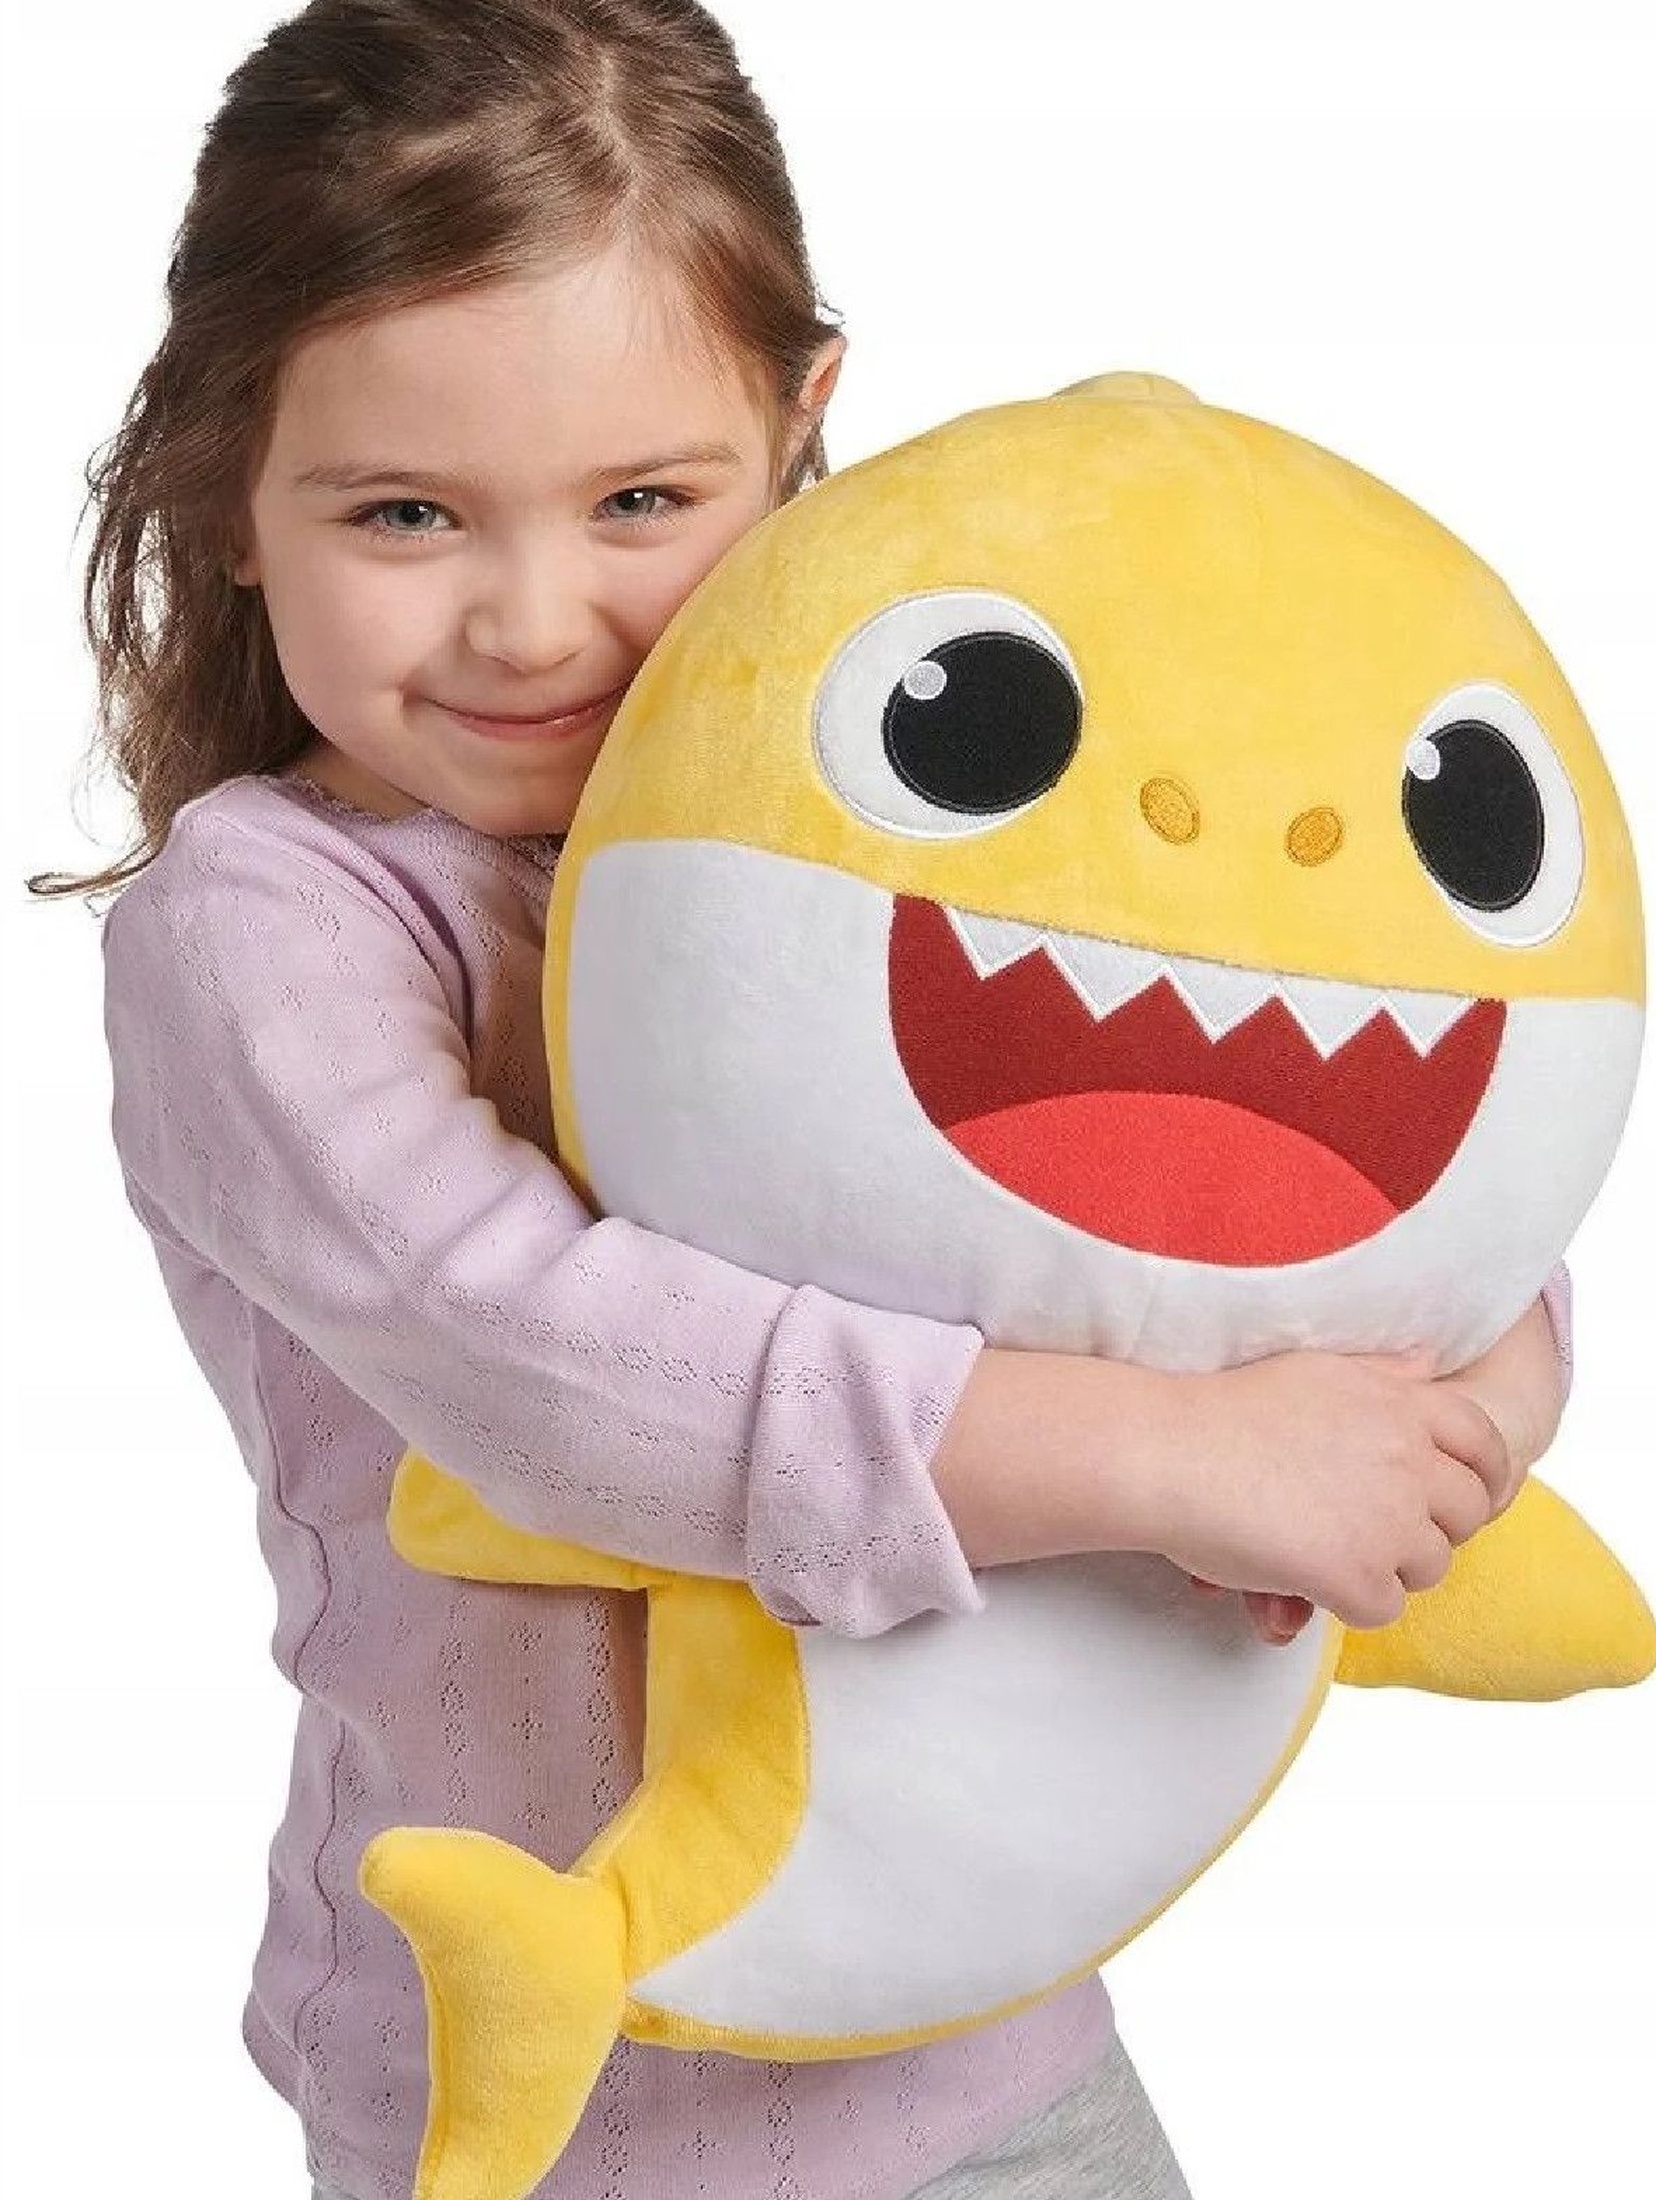 Baby Shark śpiewająca pluszowa wypchana zabawka - żółta